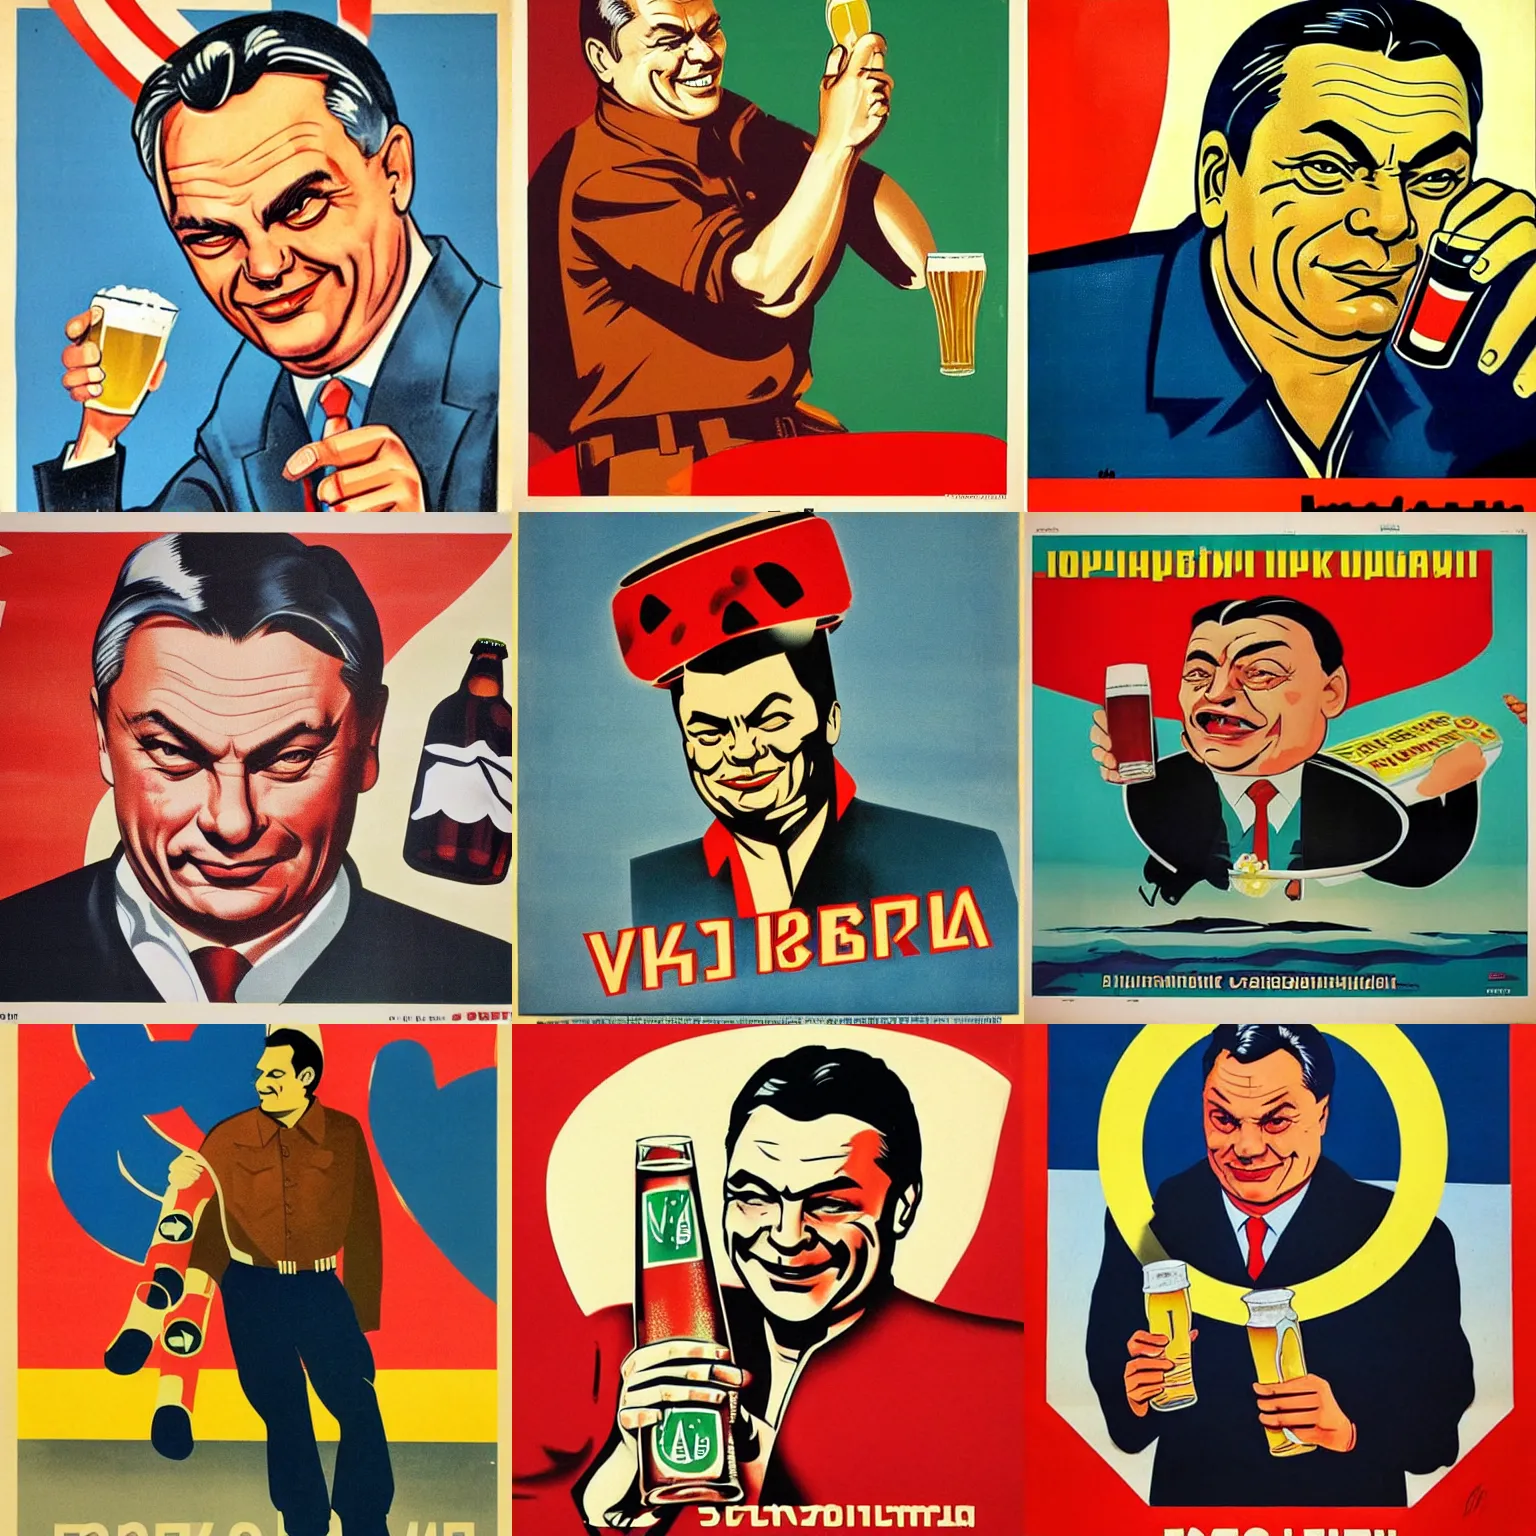 Prompt: soviet propaganda poster of viktor orban winking with beer